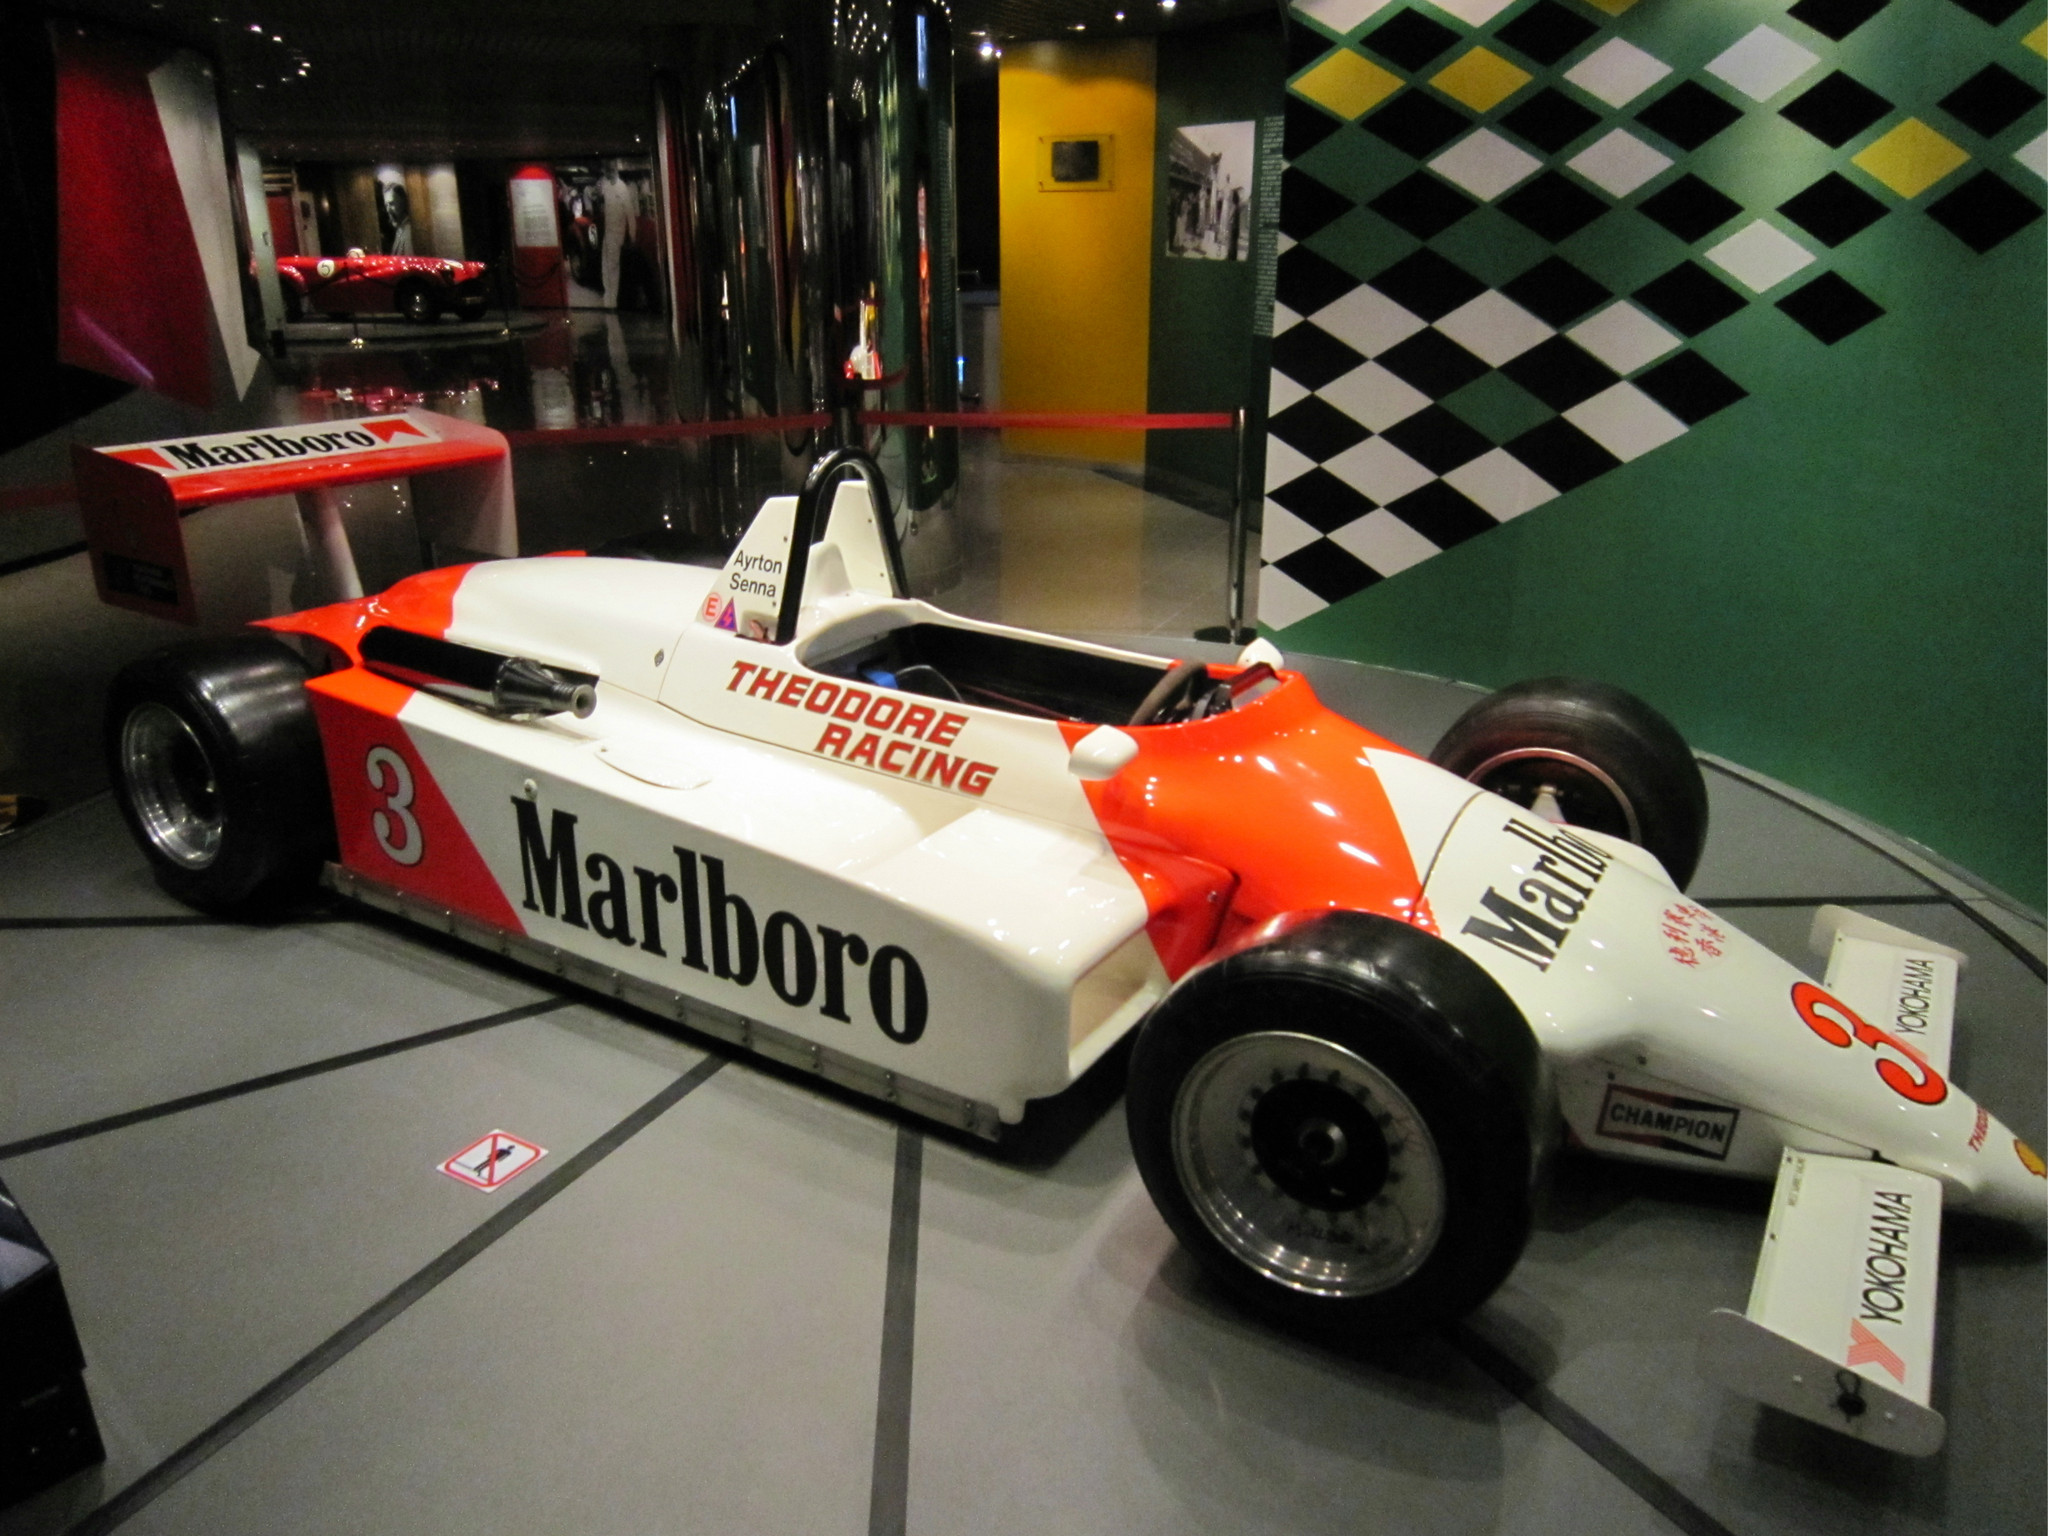 大賽車博物館